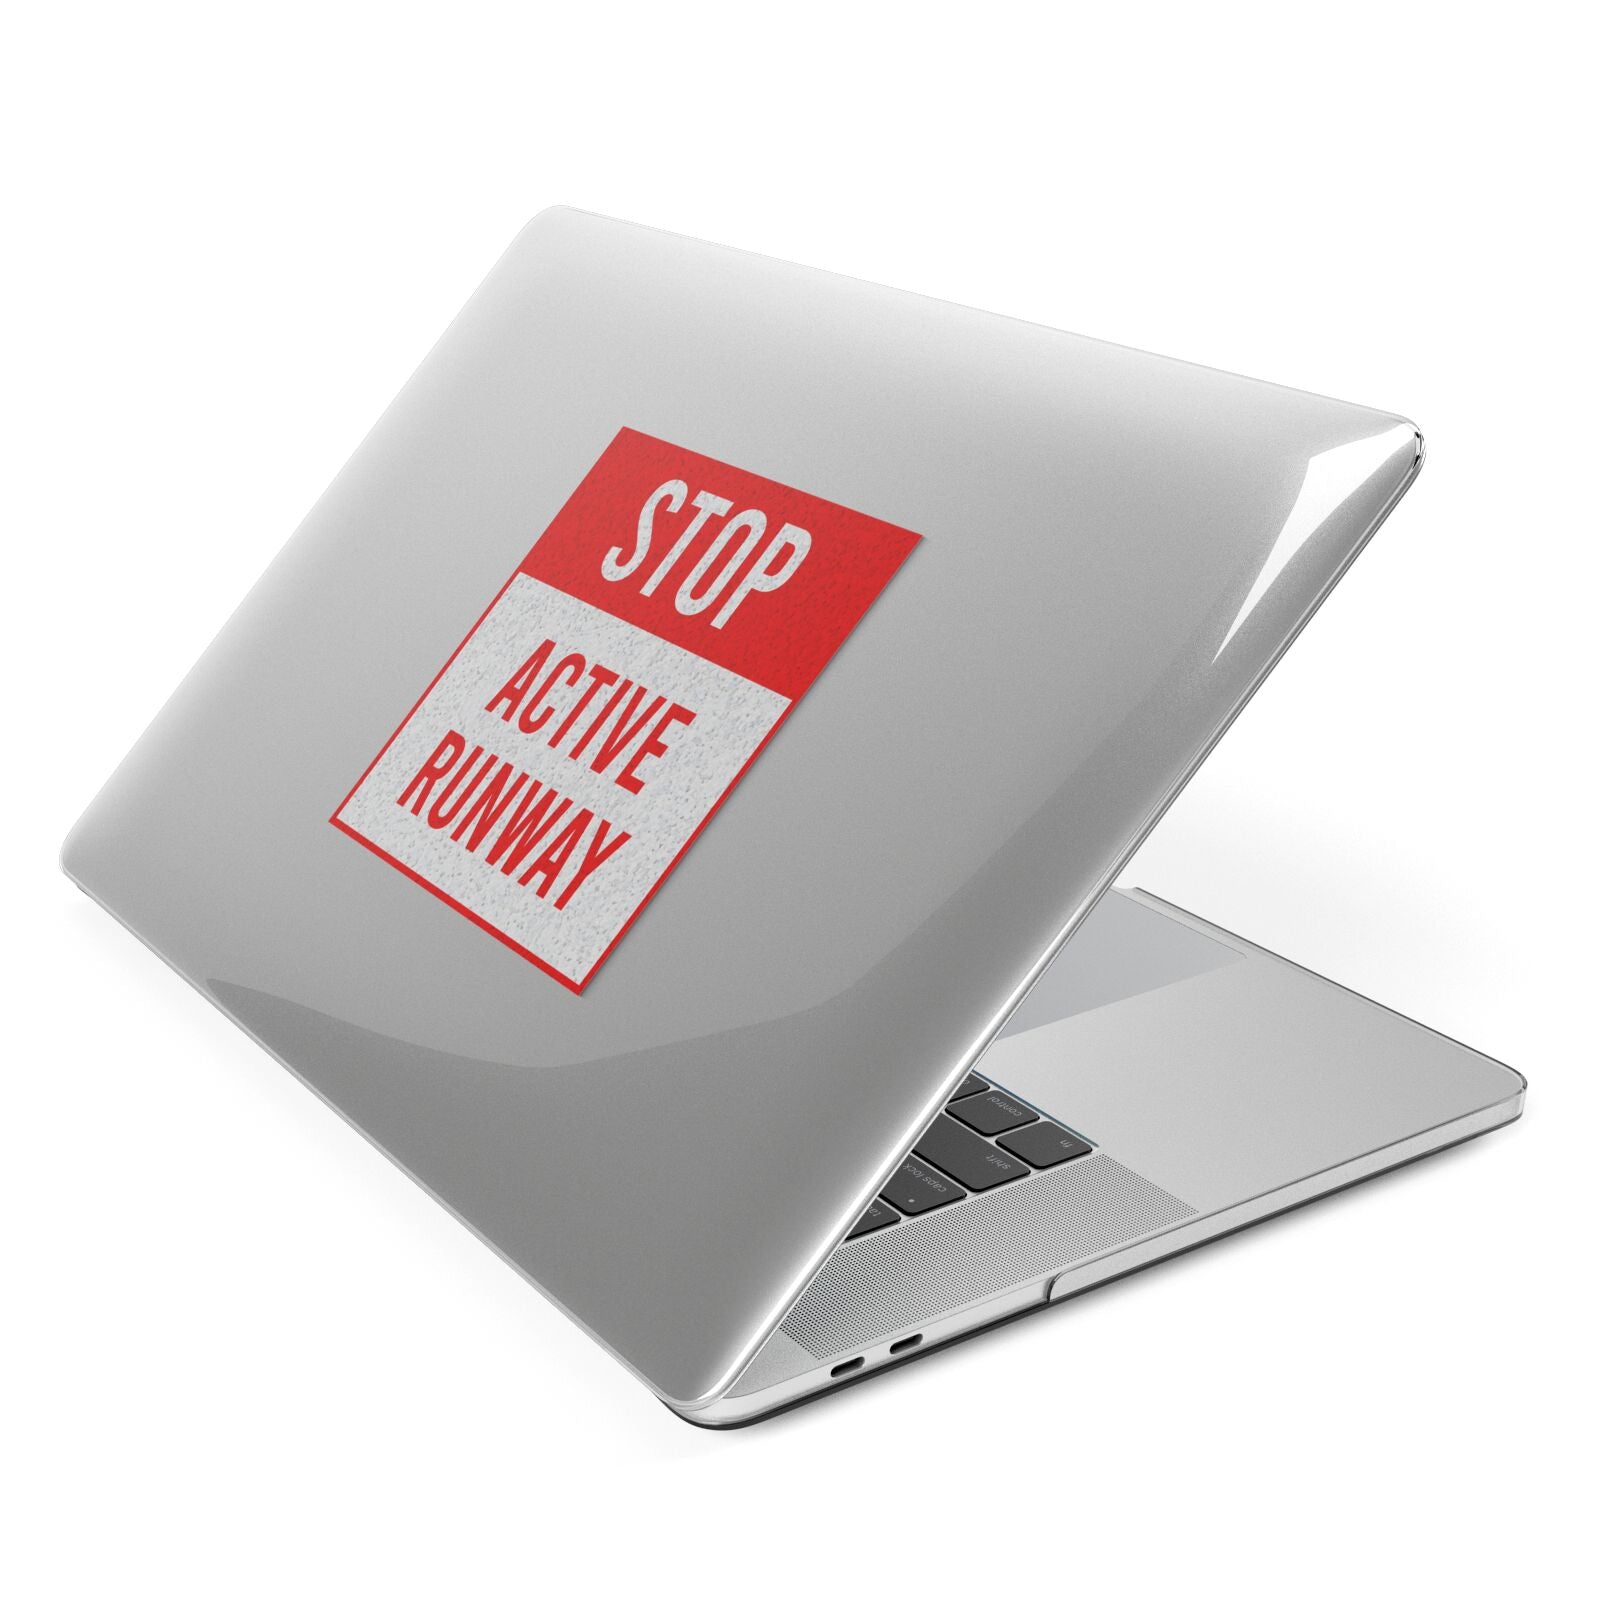 Stop Active Runway Apple MacBook Case Side View